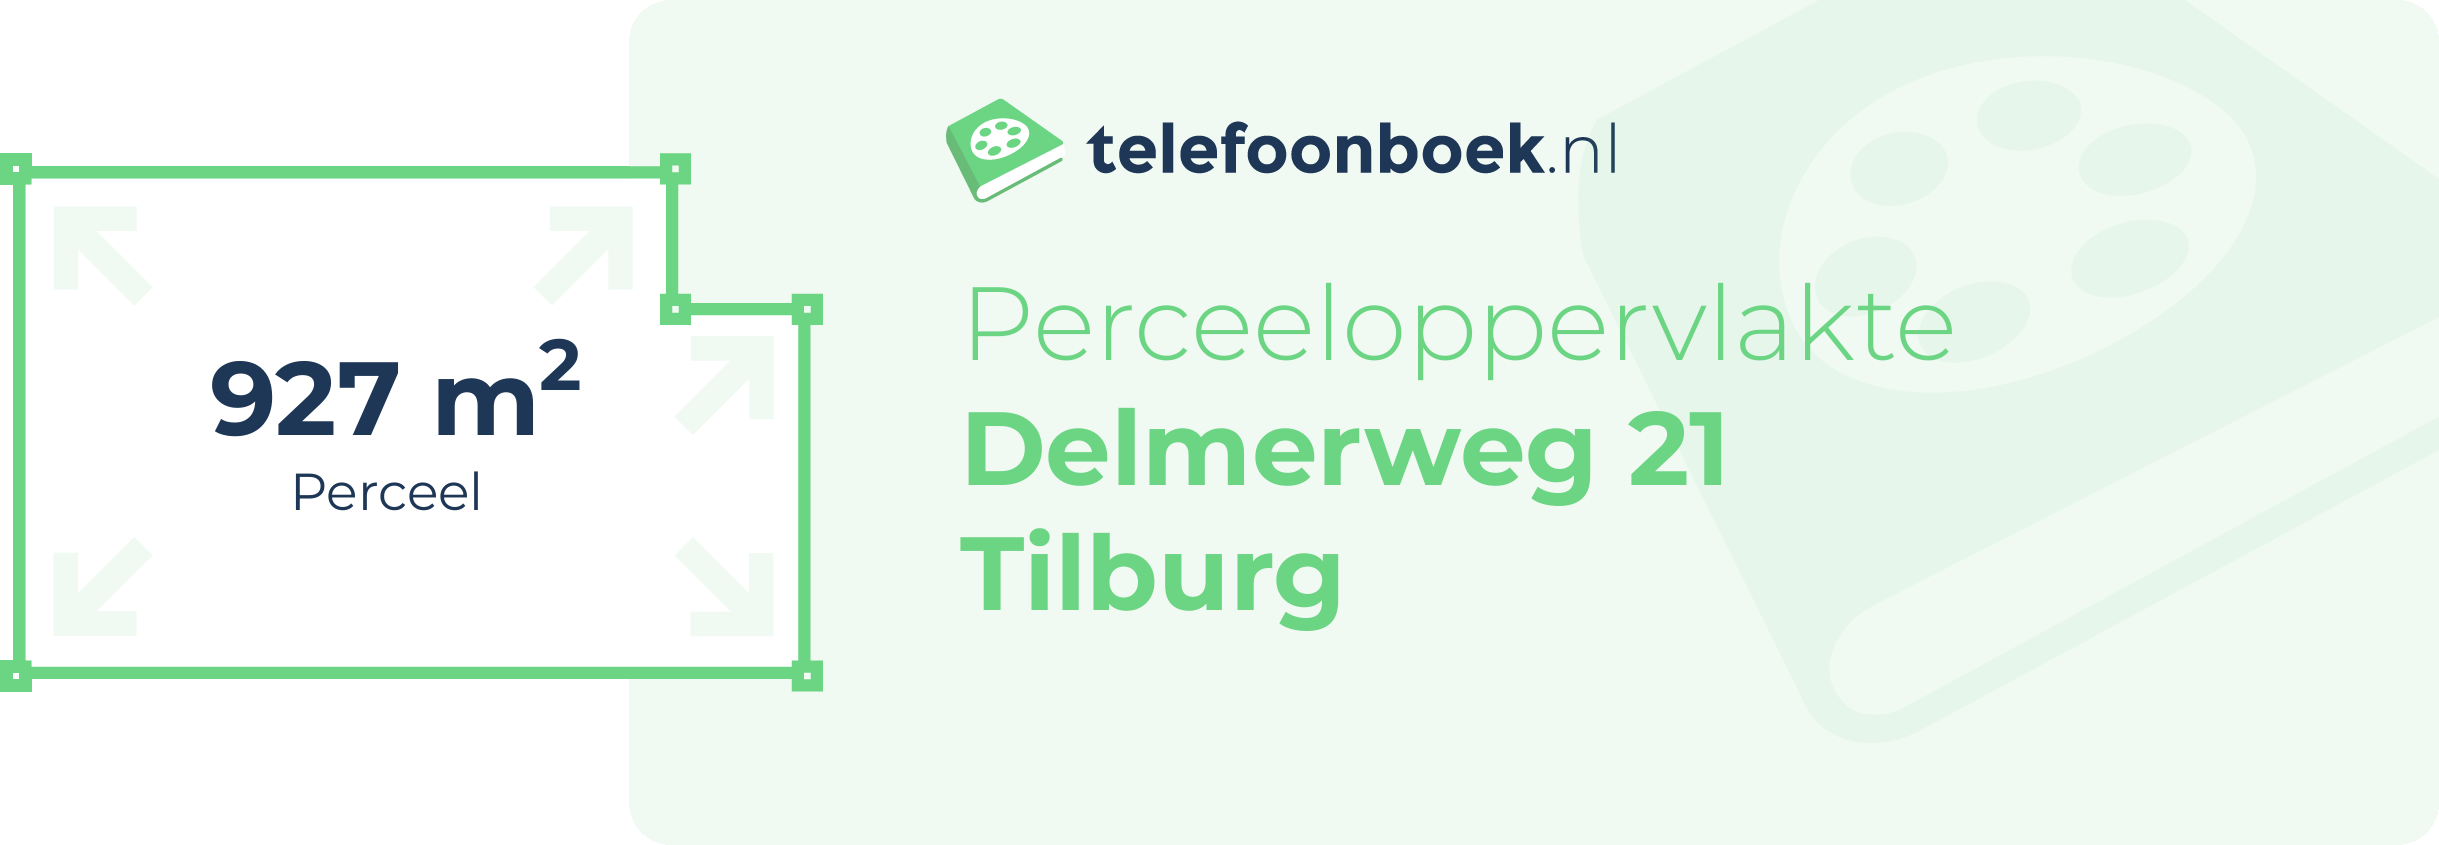 Perceeloppervlakte Delmerweg 21 Tilburg